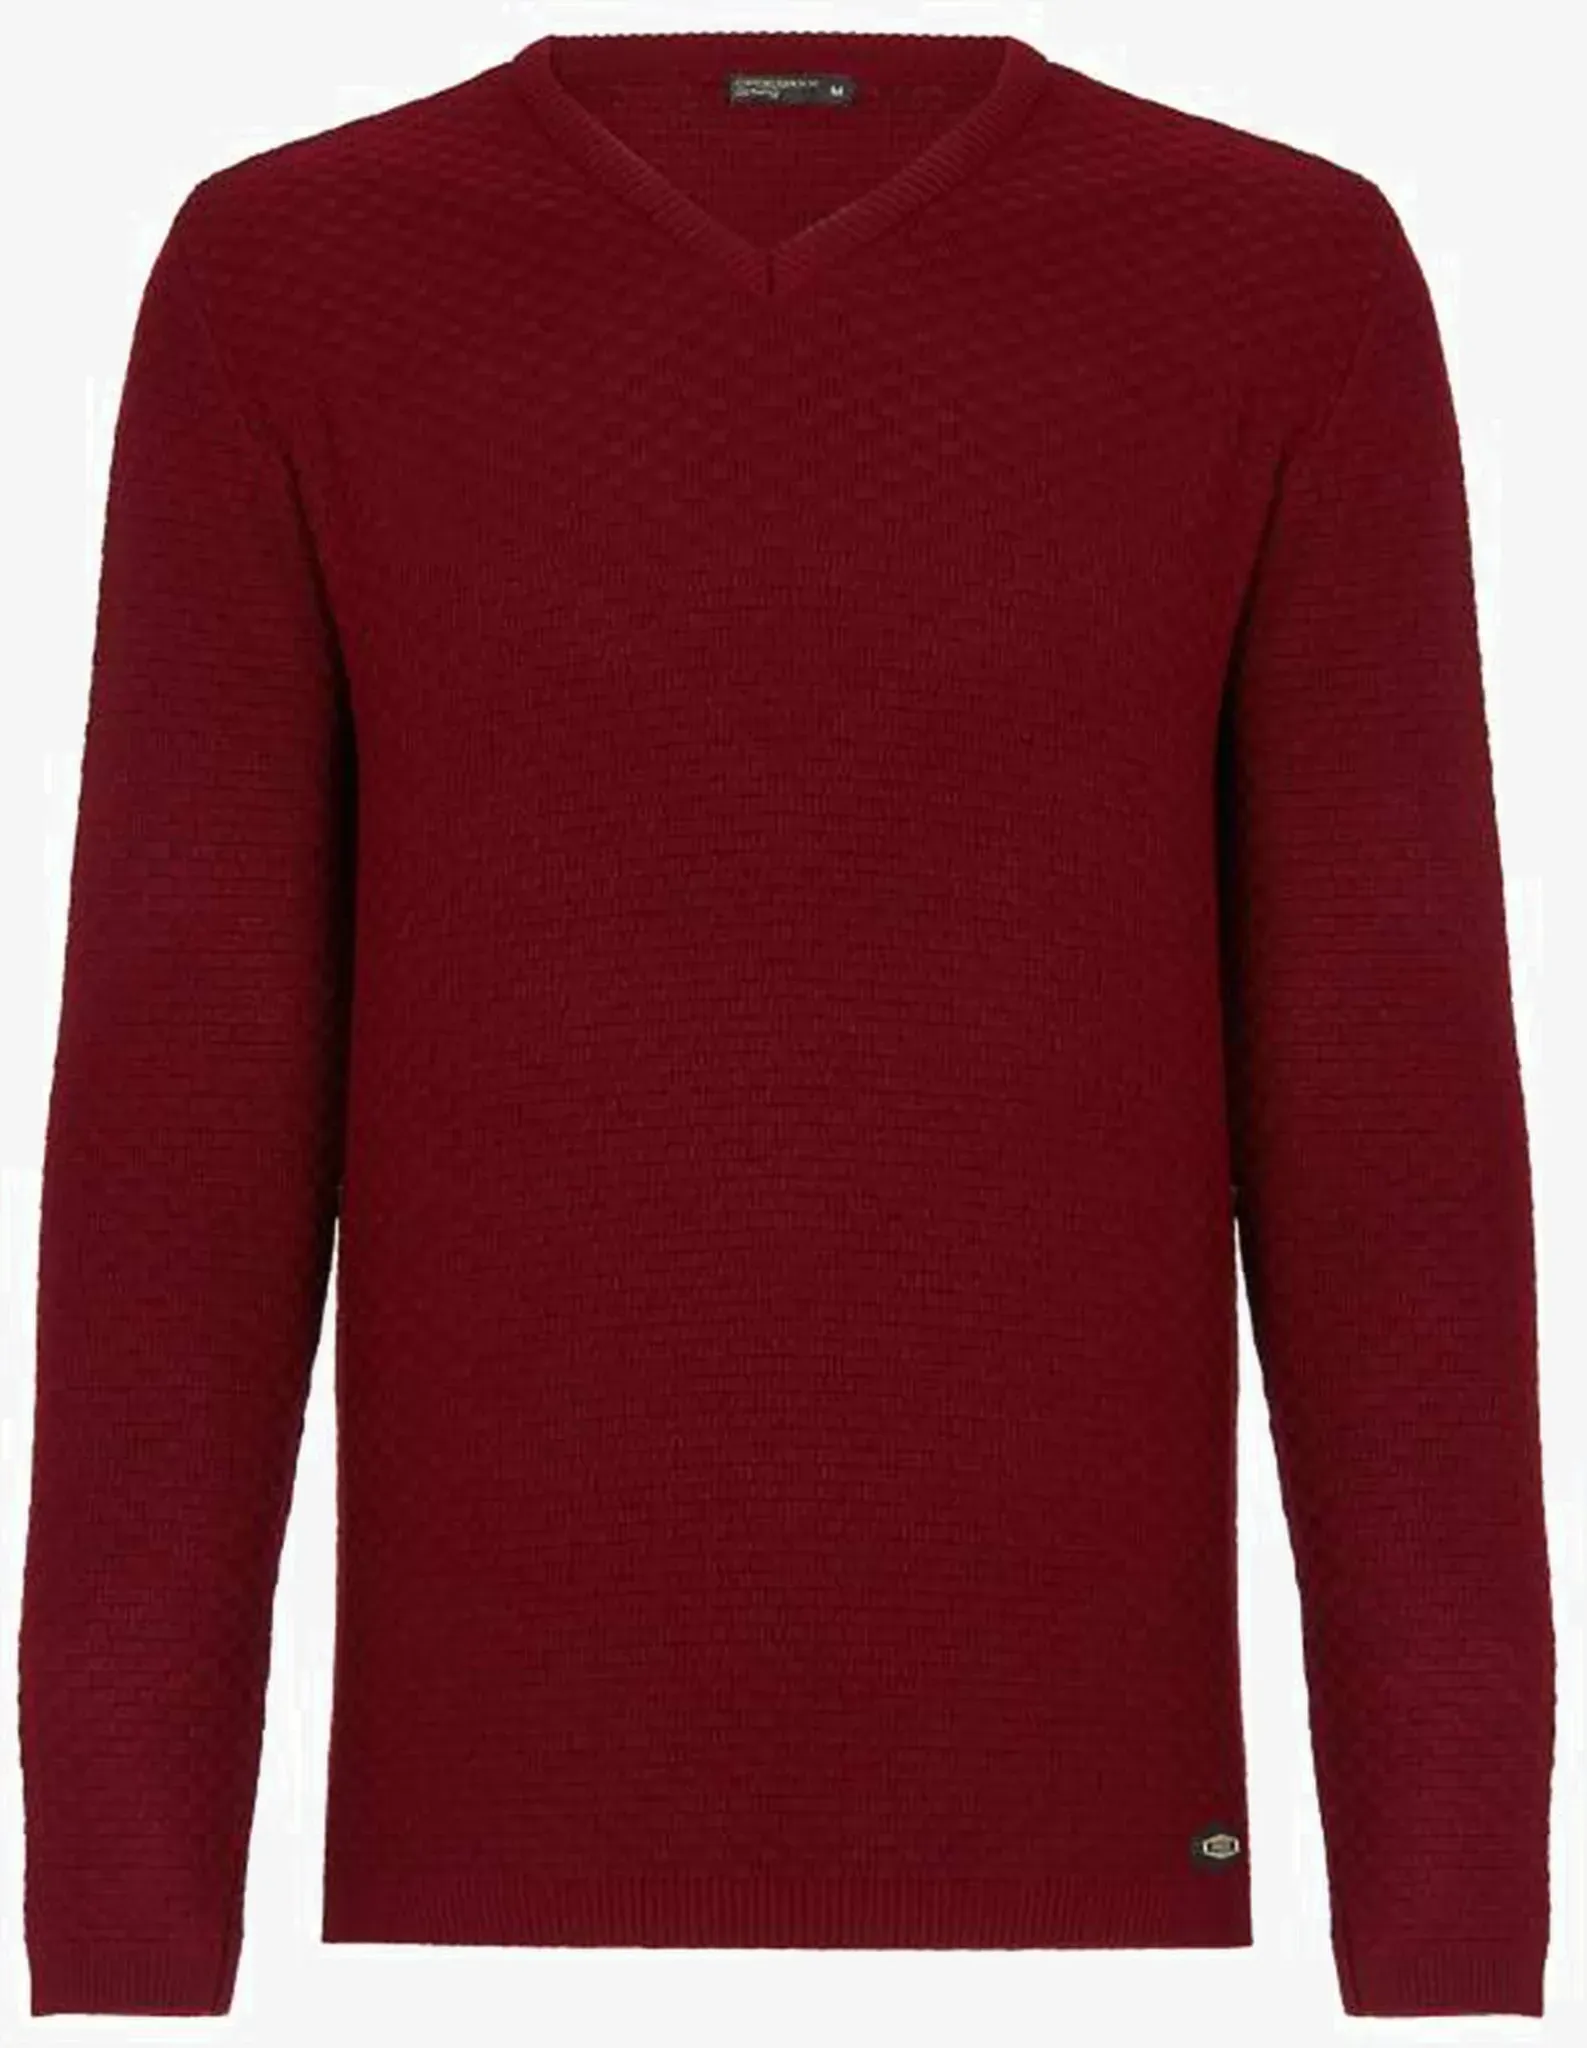 V-Ausschnitt-Pullover CIPO & BAXX Gr. XXL, rot Herren Pullover V-Ausschnitt-Pullover mit modischem V-Ausschnitt